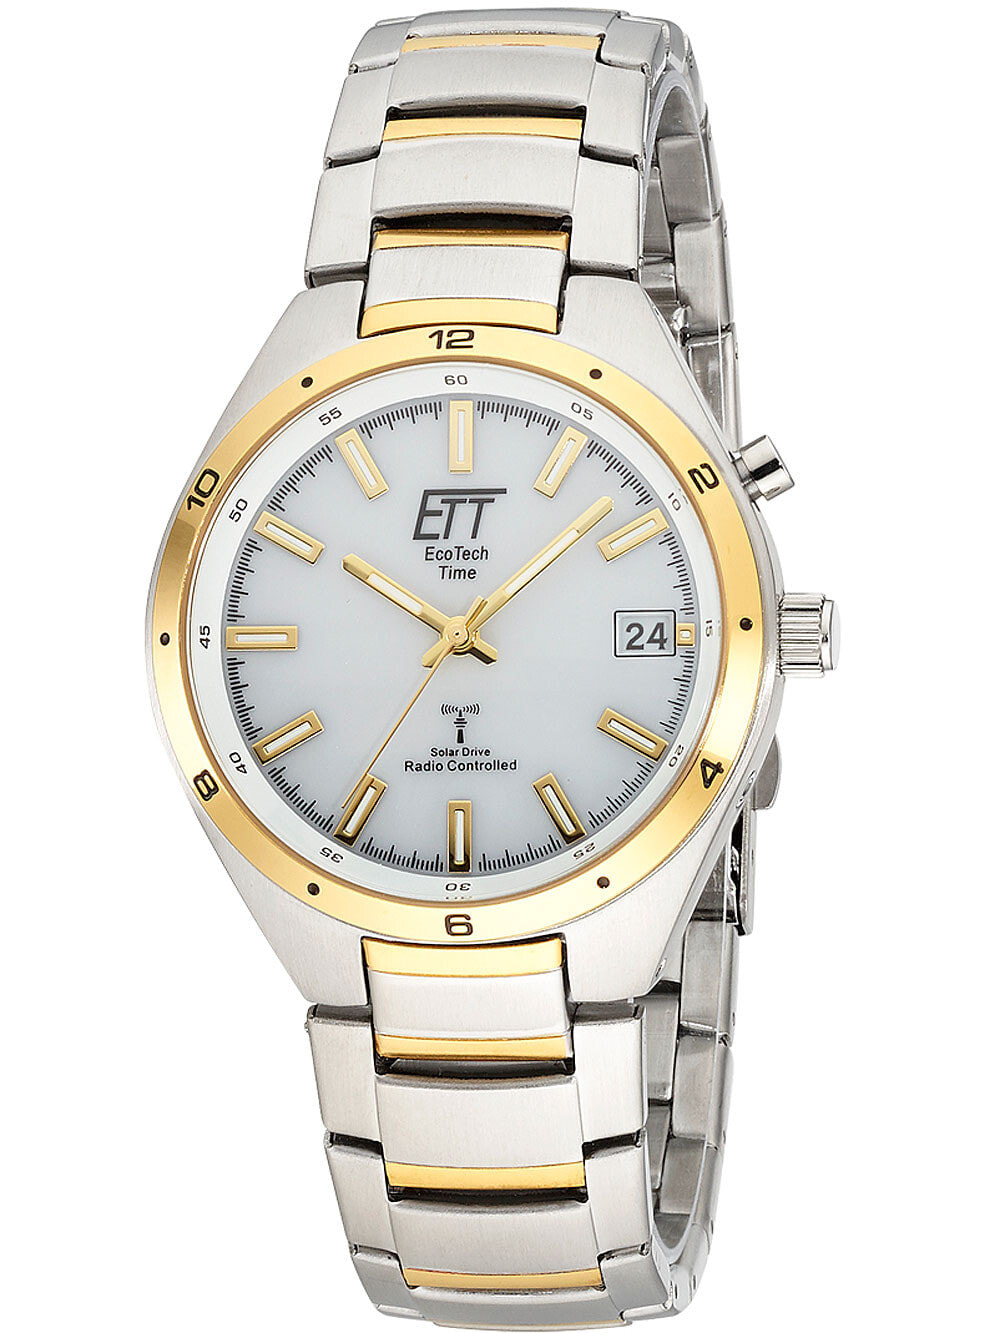 Мужские наручные часы с серебряным браслетом ETT EGS-11443-11M Funk Solar Drive Altai mens 41mm 5ATM